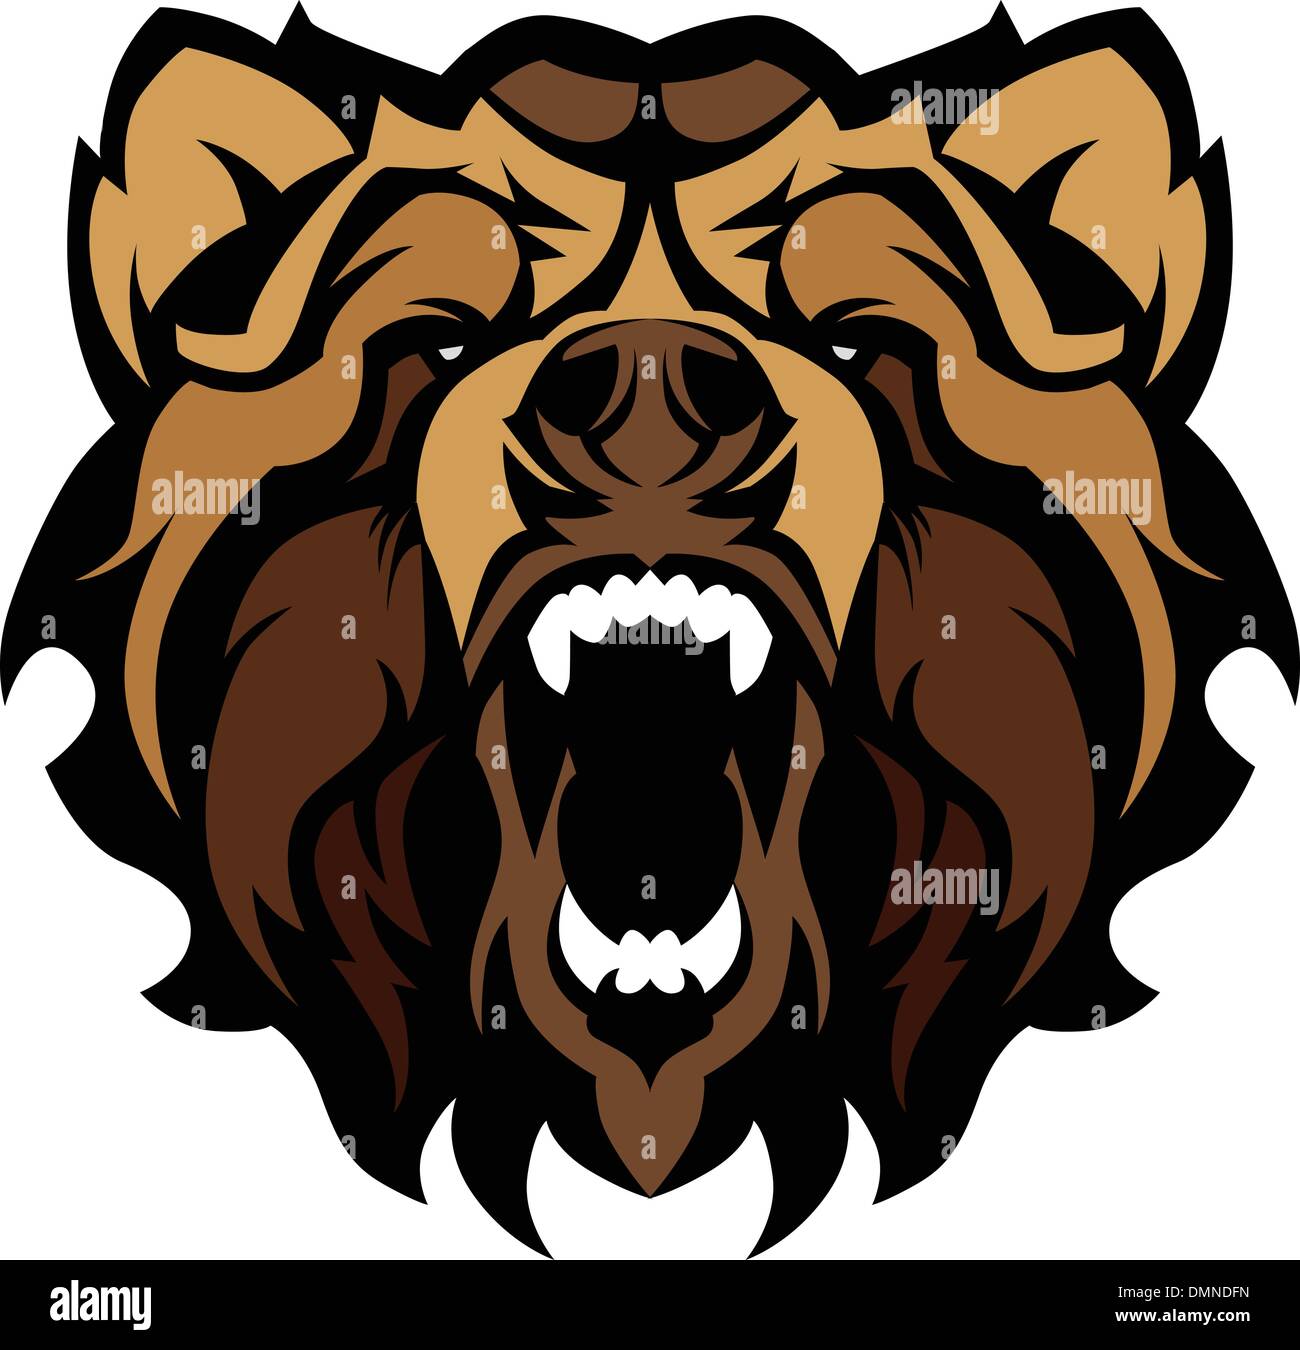 Orso grizzly grafica mascotte illustrazione vettoriale Illustrazione Vettoriale